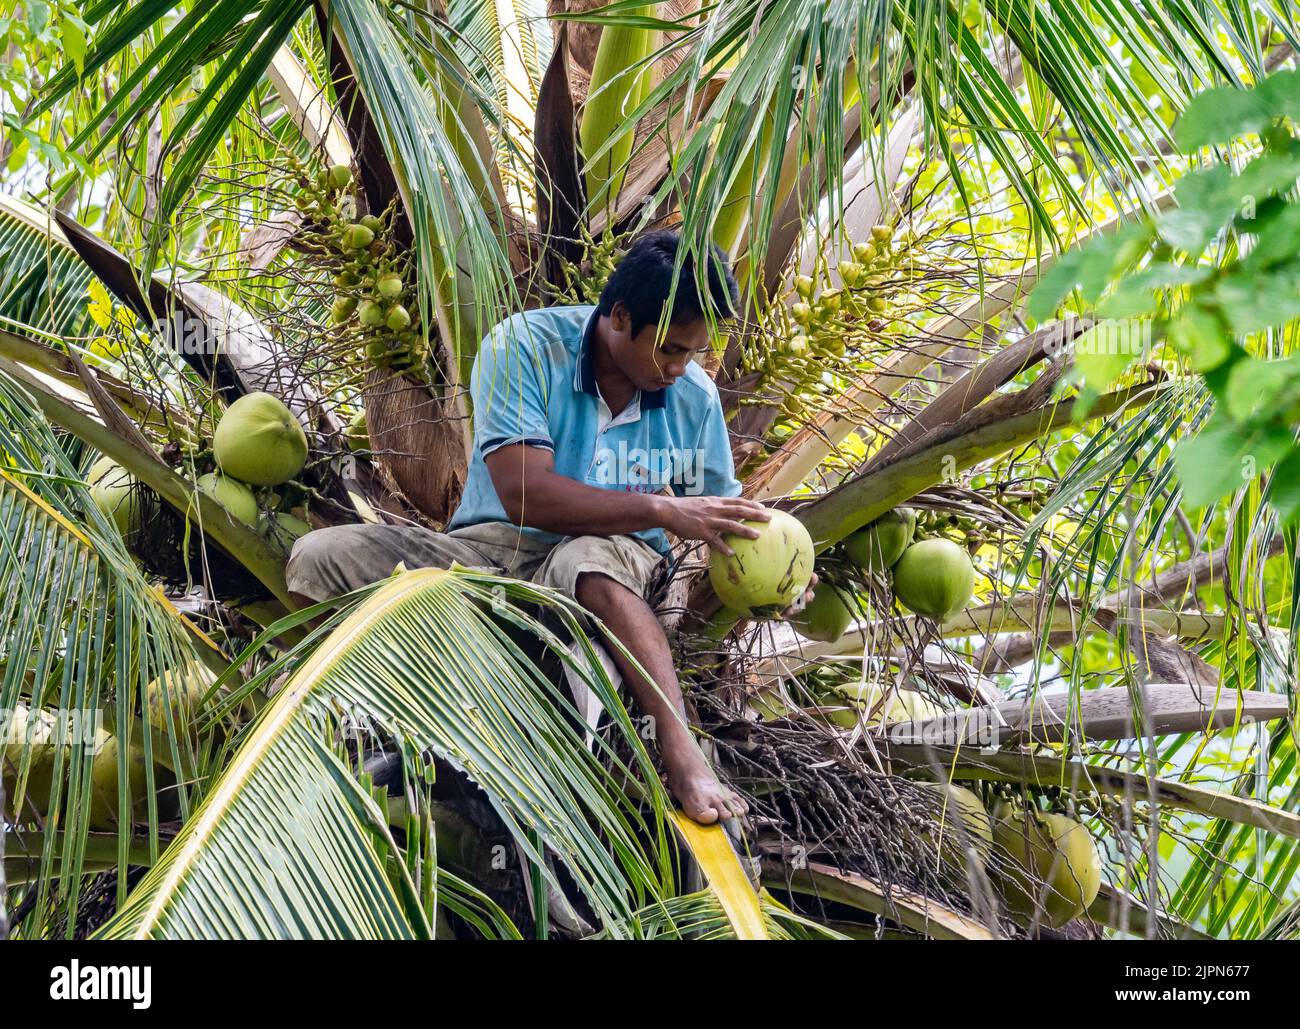 Un jeune indonésien récolte des noix de coco d'un arbre. Sulawesi, Indonésie. Banque D'Images